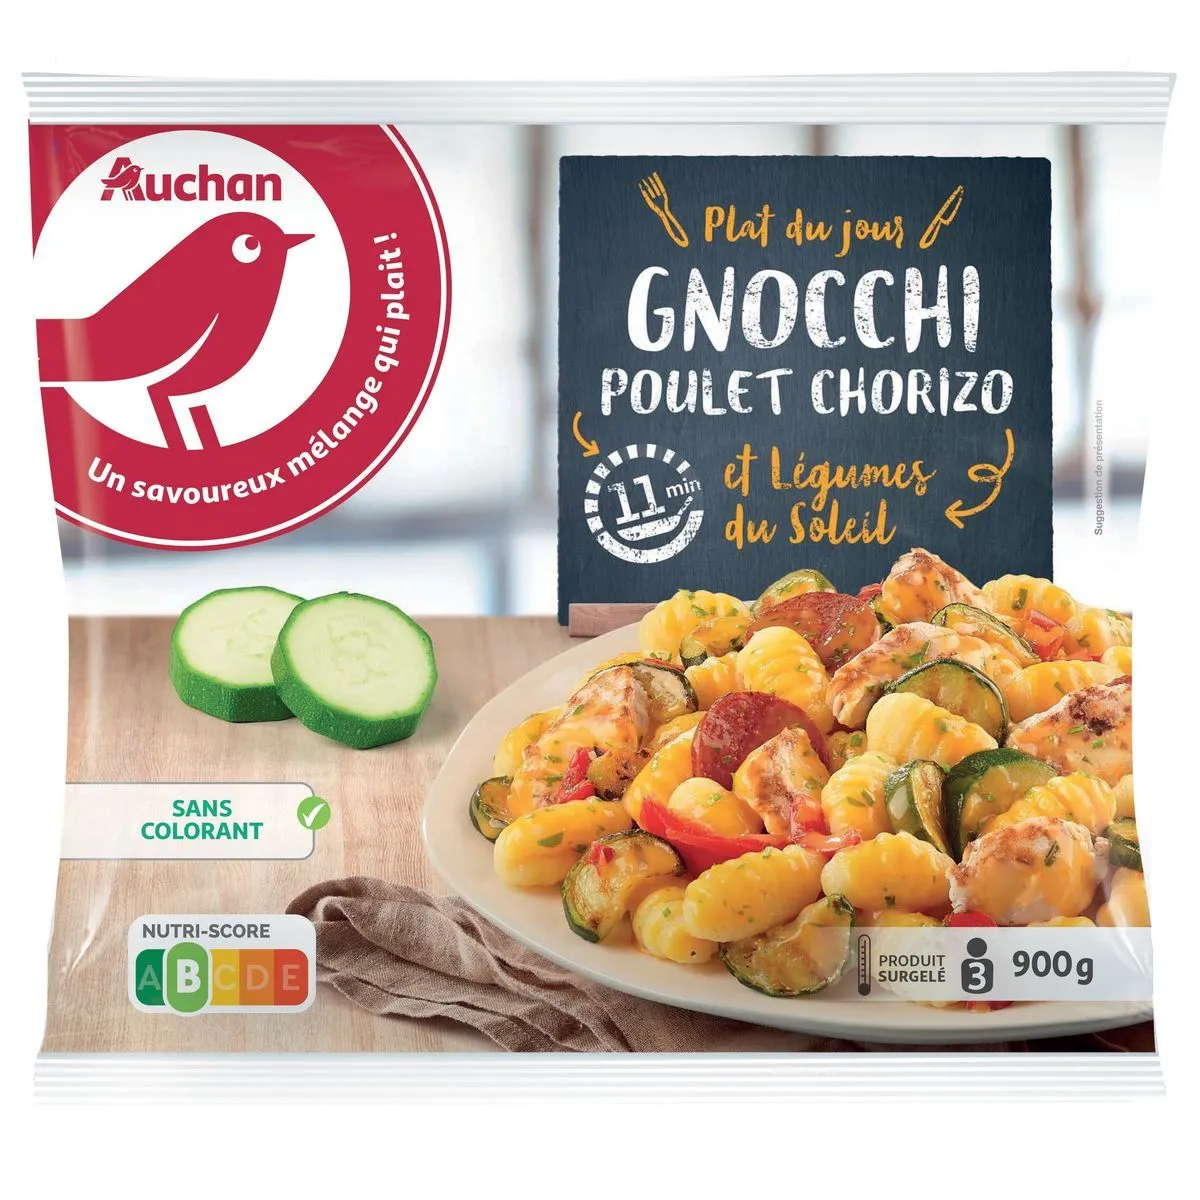  gnocchis poulet chorizo et légumes du soleil surgelés auchan